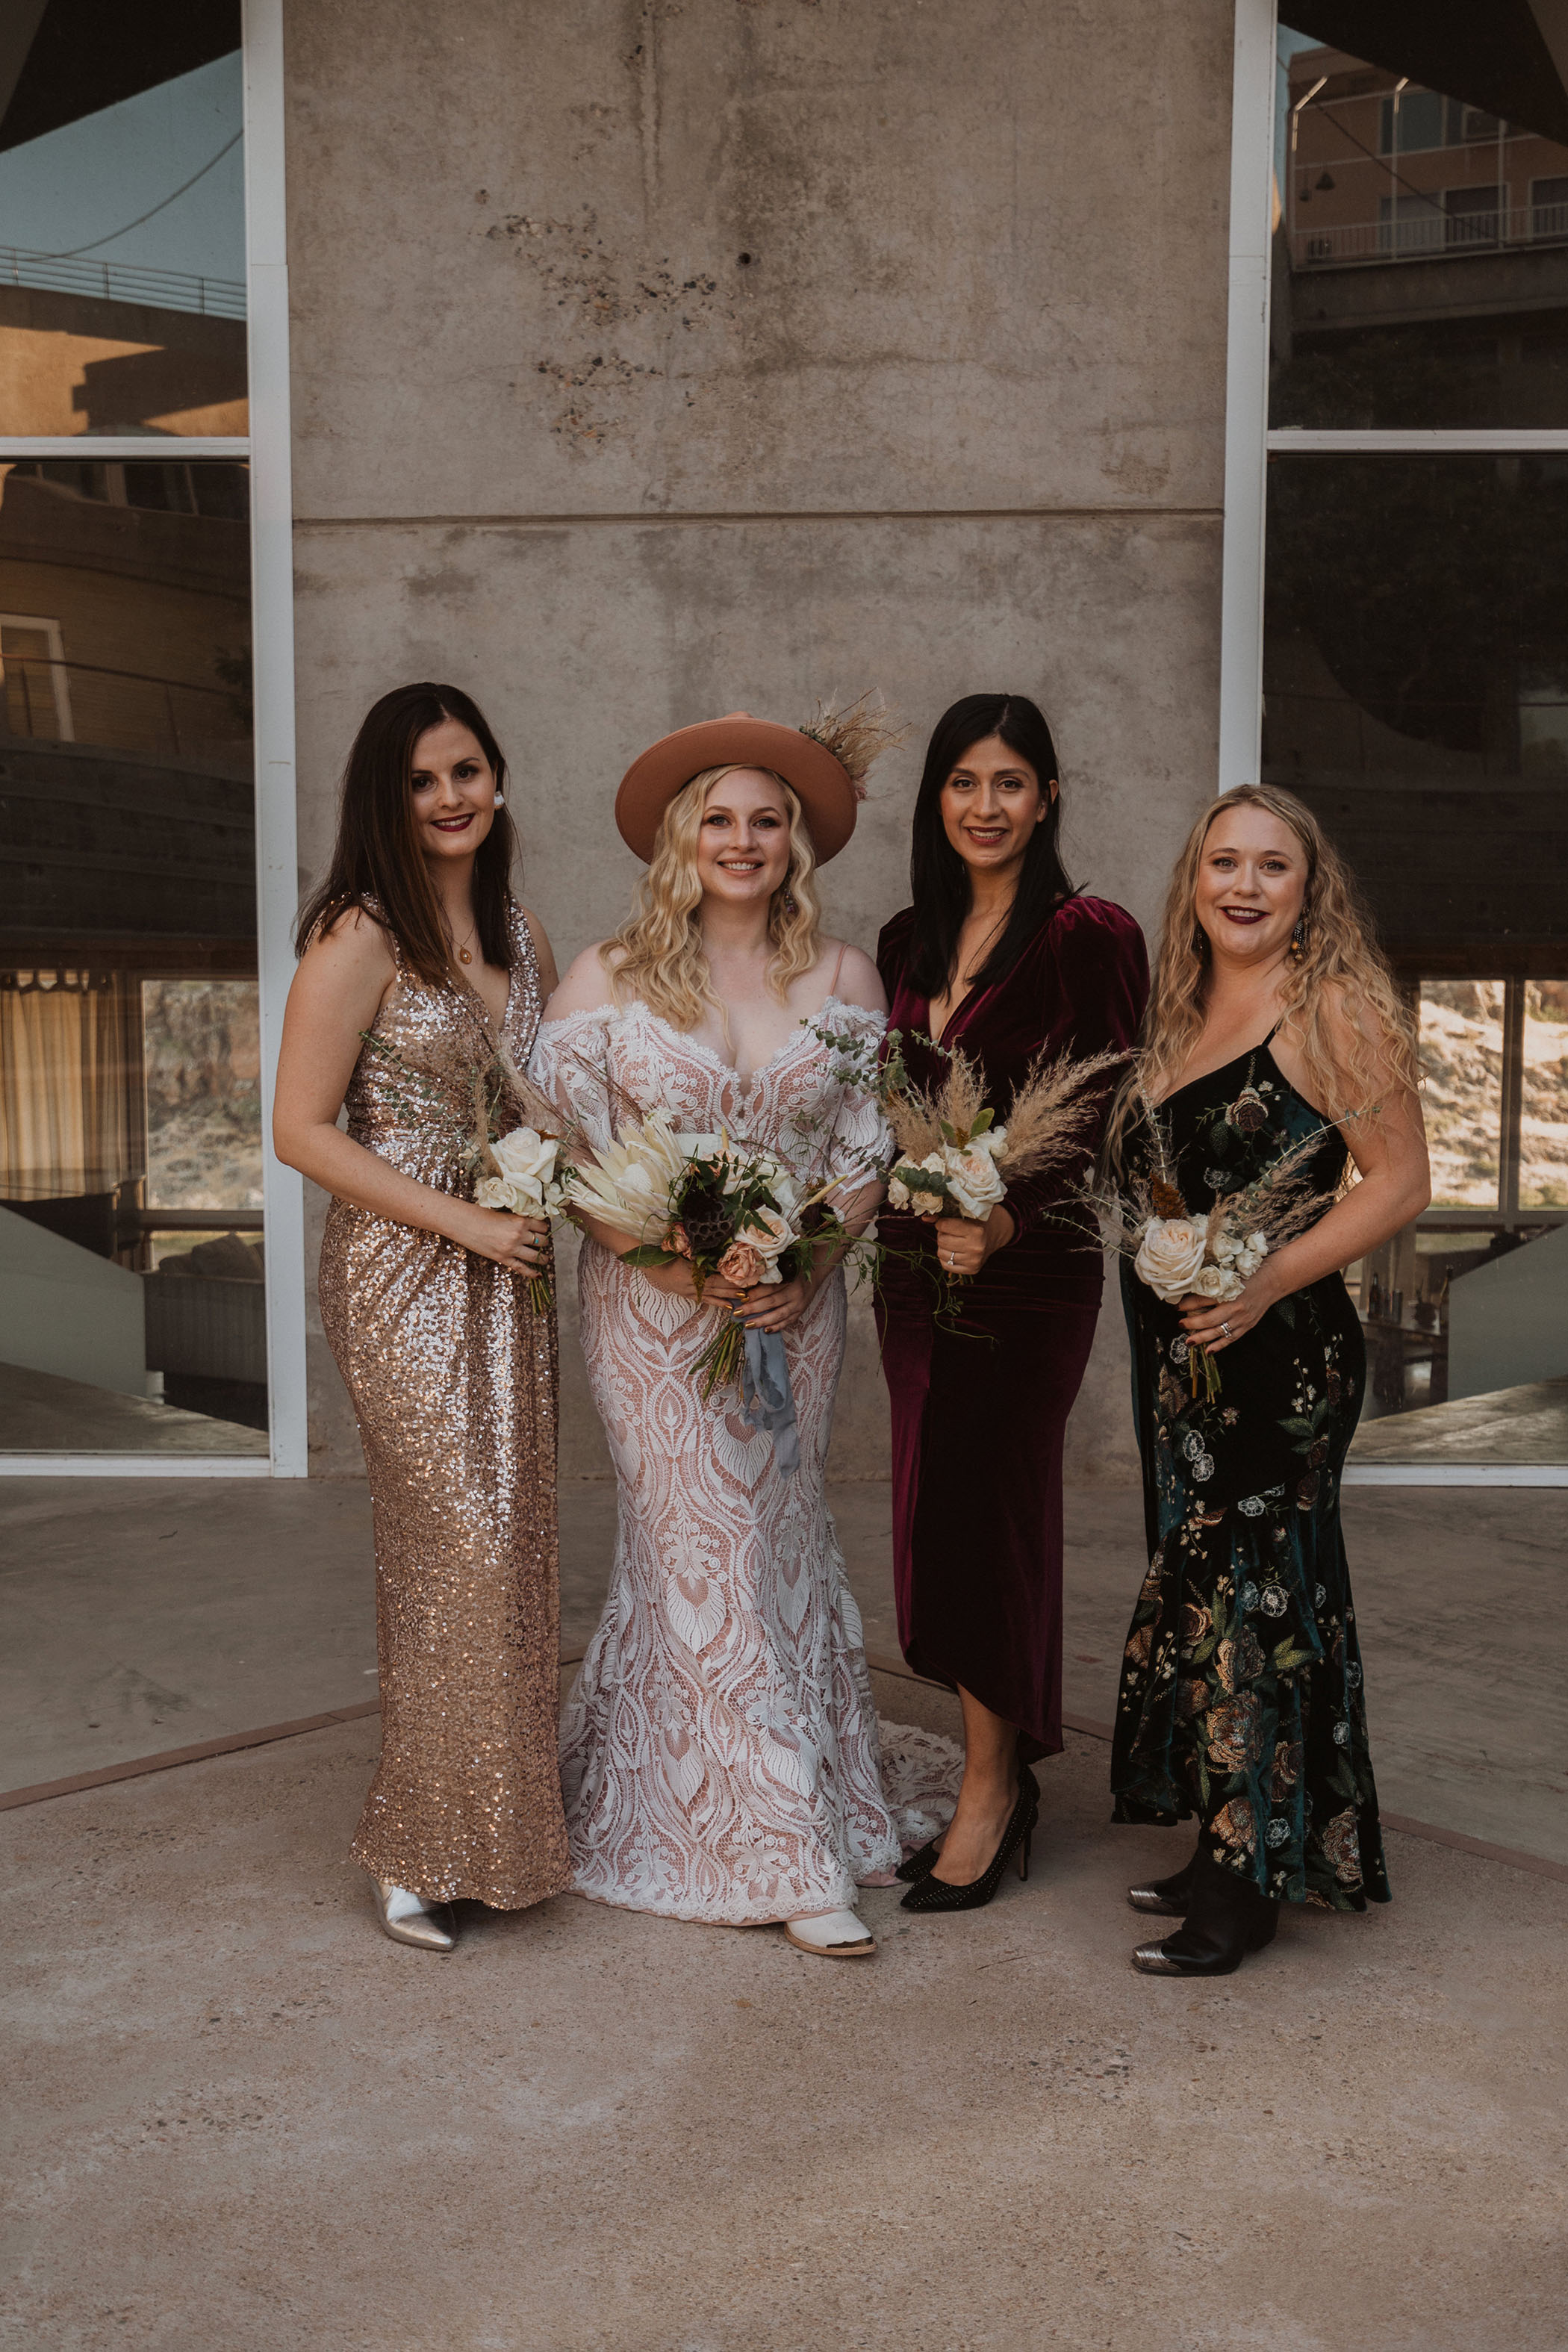 Arcosanti Arizona Wedding